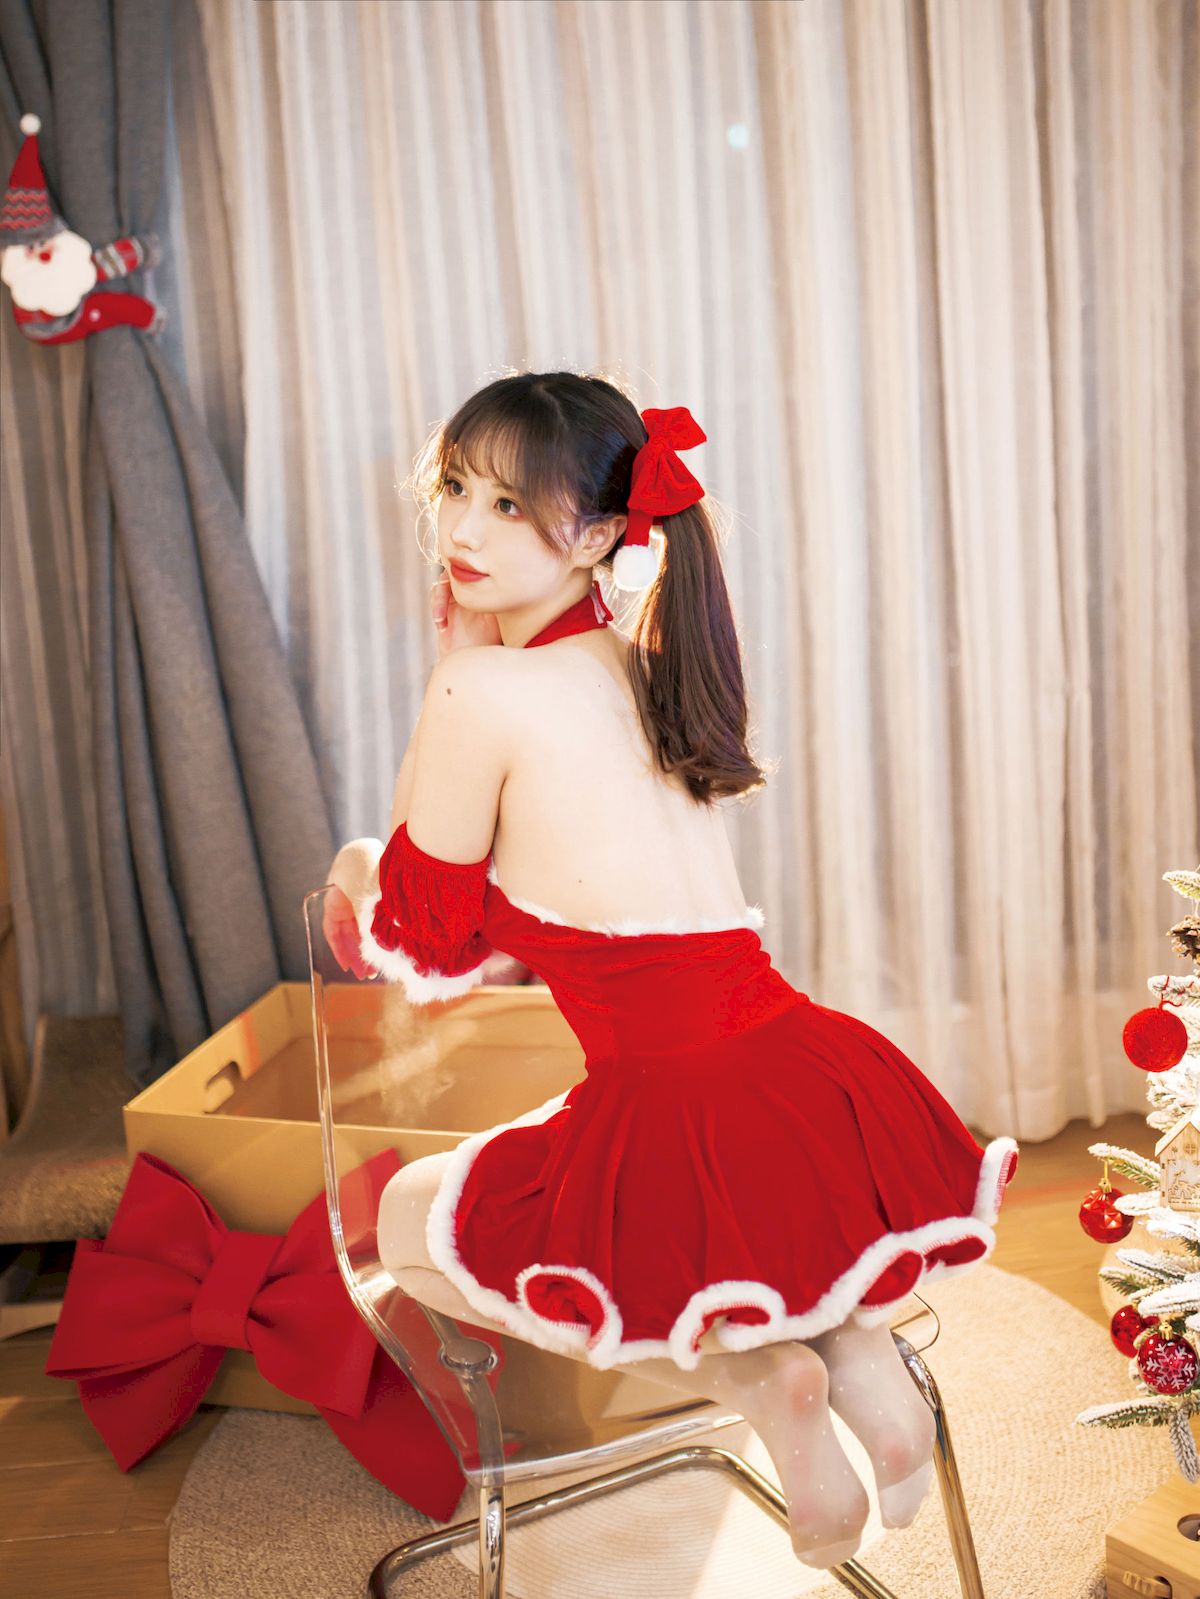 念雪ww圣诞红裙玫瑰礼物主题可爱写真